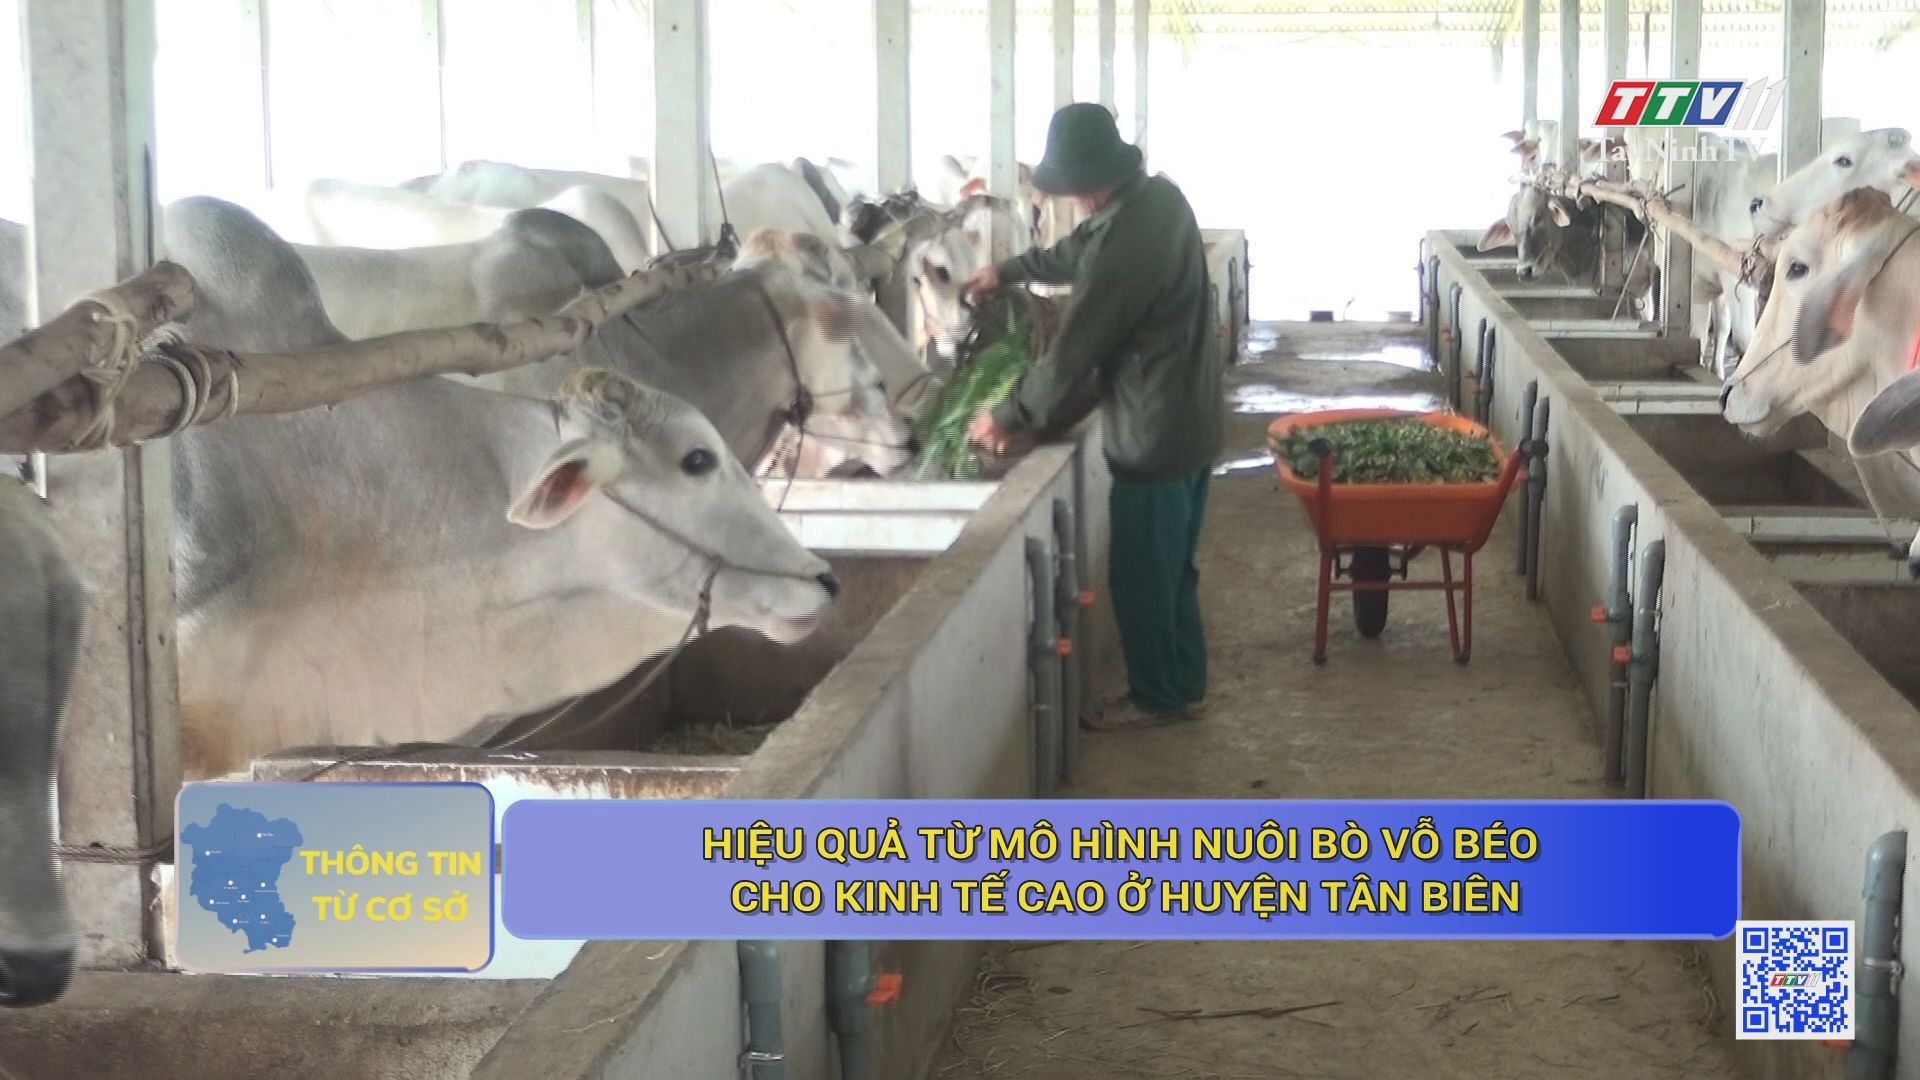 Hiệu quả từ mô hình nuôi bò vỗ béo cho kinh tế cao ở huyện Tân Biên | THÔNG TIN TỪ CƠ SỞ | TayNinhTV